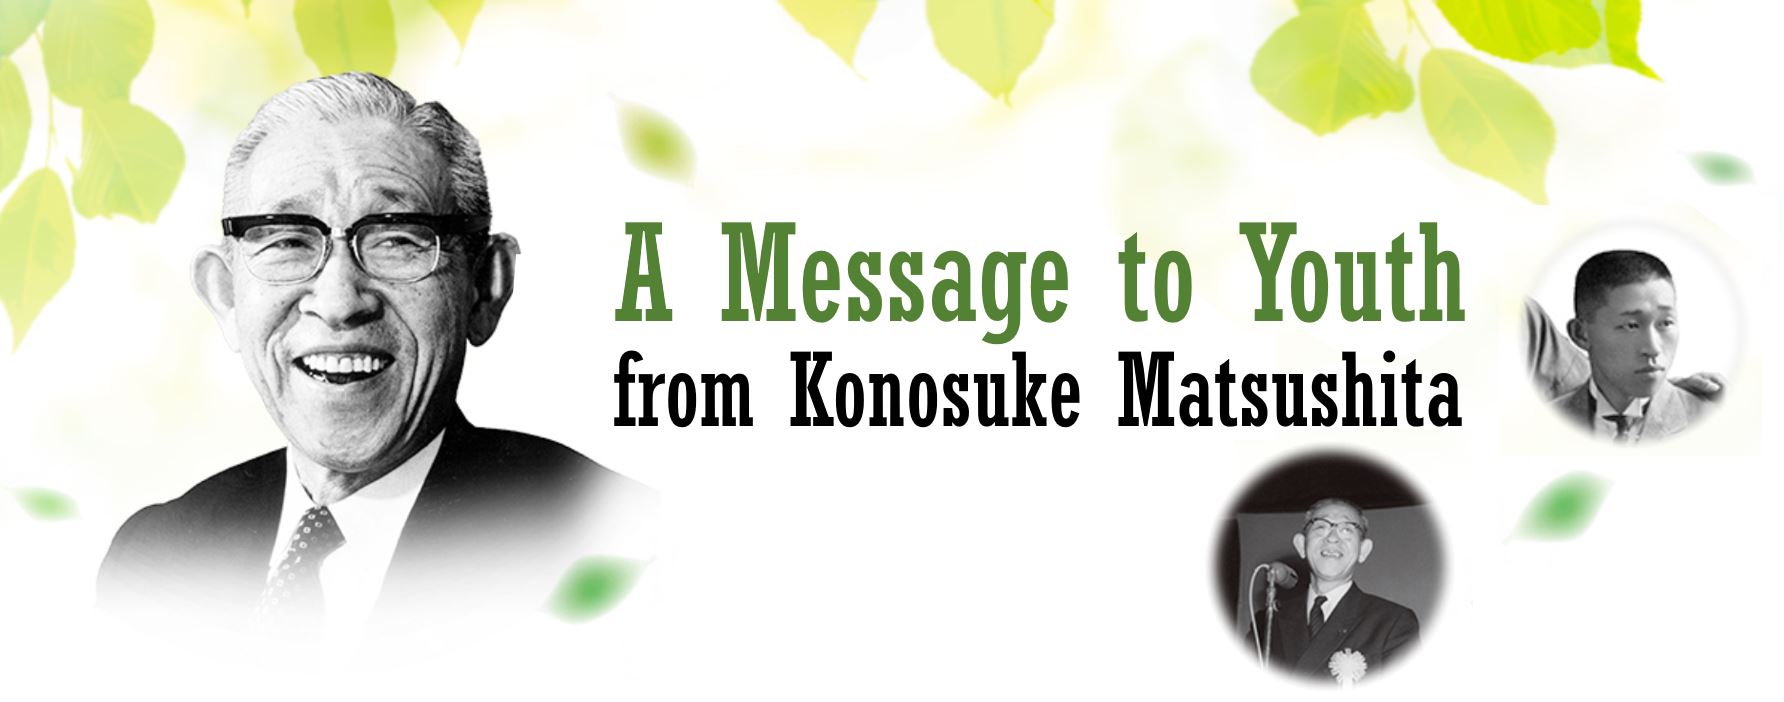 A Message to Youth from Konosuke Matsushita